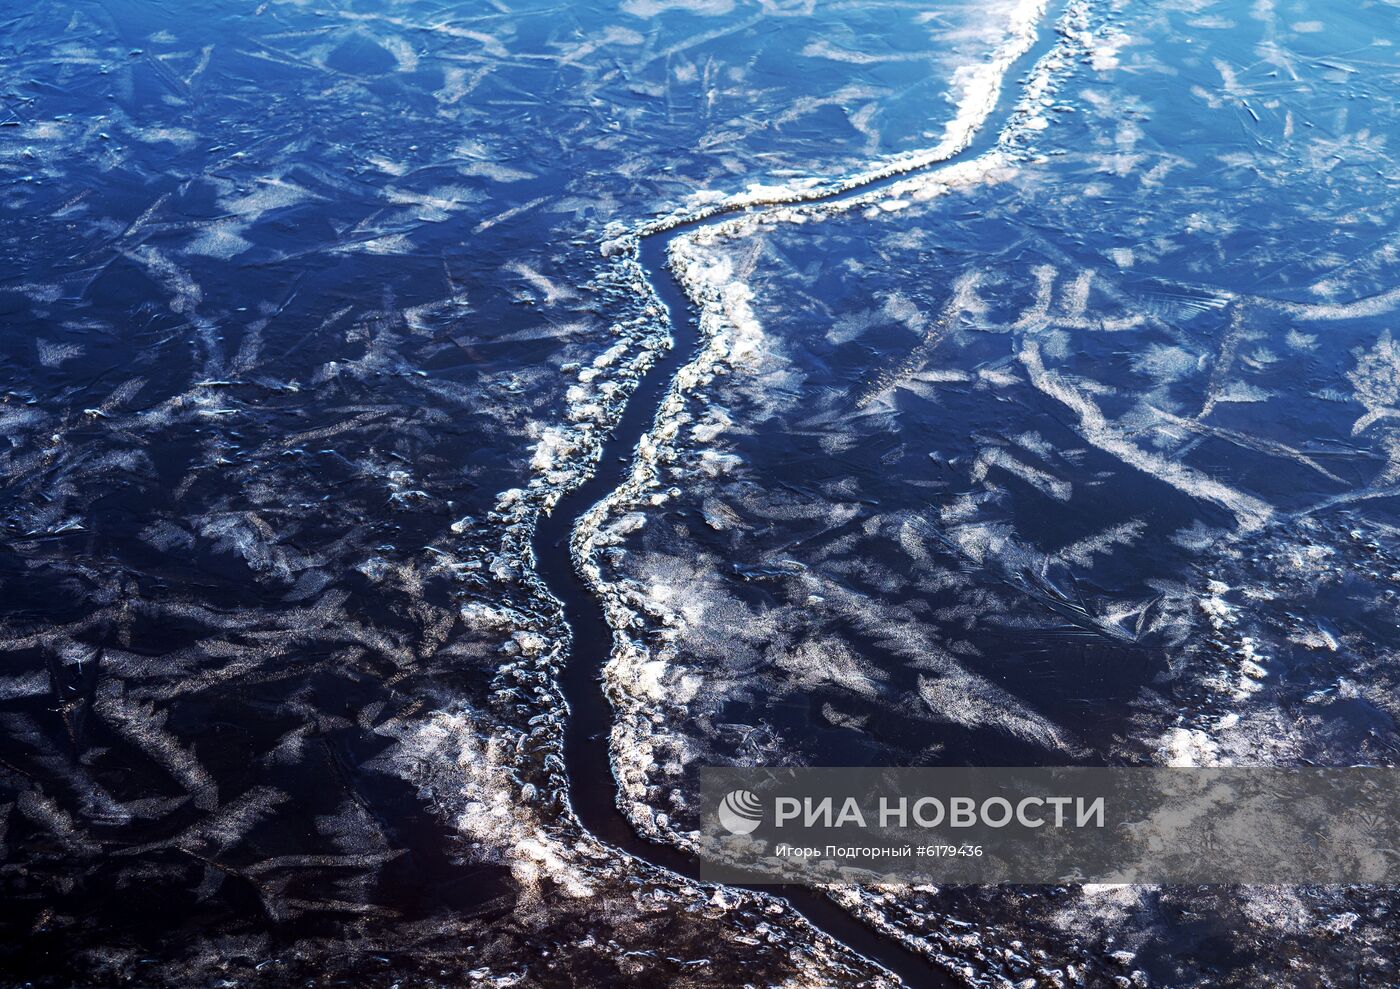 Онежское озеро в районе Петрозаводска